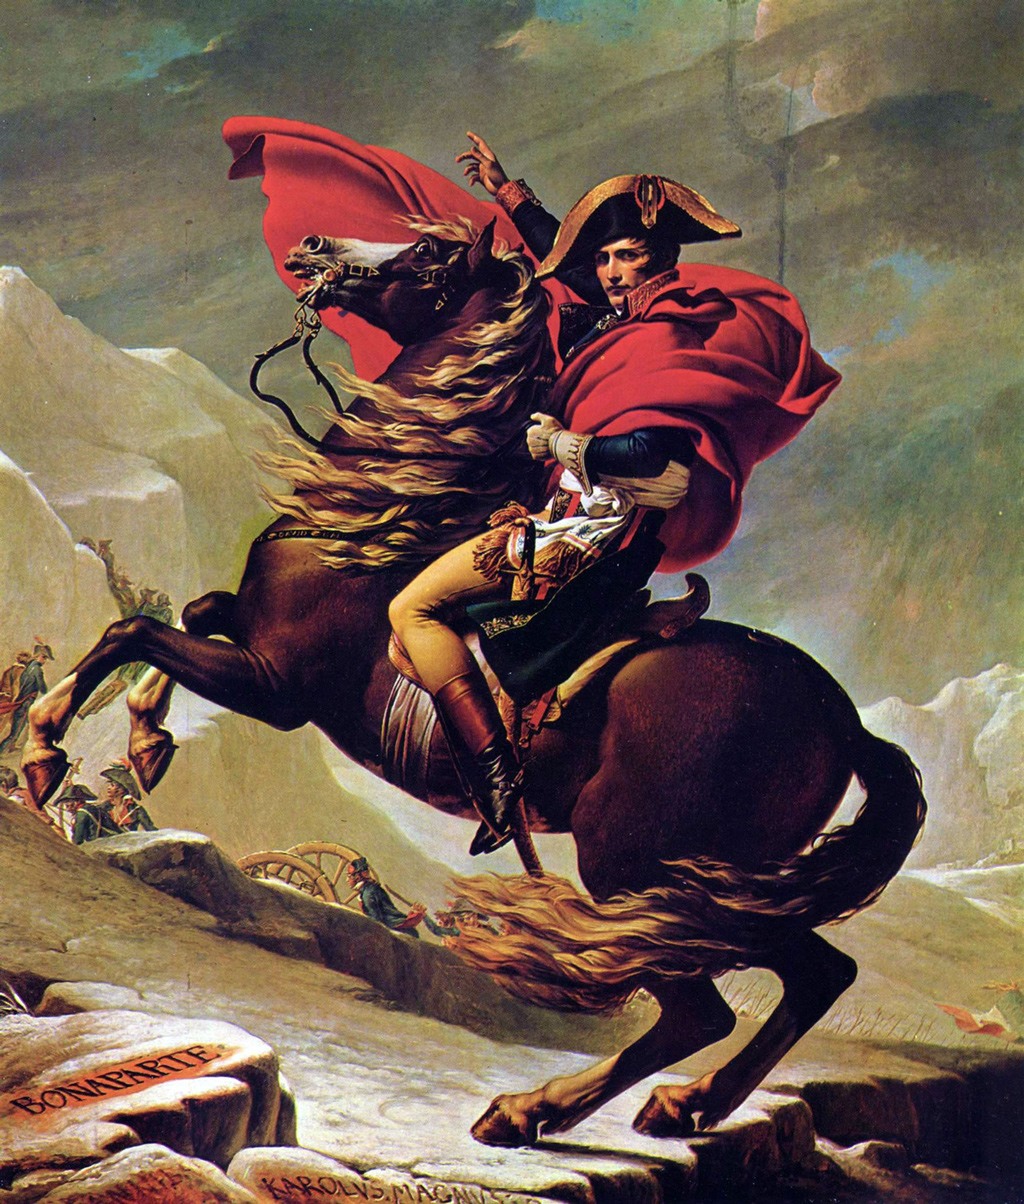 لوحة من رسم (جاك لوي ديفيد) للجنرال الشاب (بونابرت) الذي يعبر جبال الألب أثناء حروب الثورة الفرنسية.